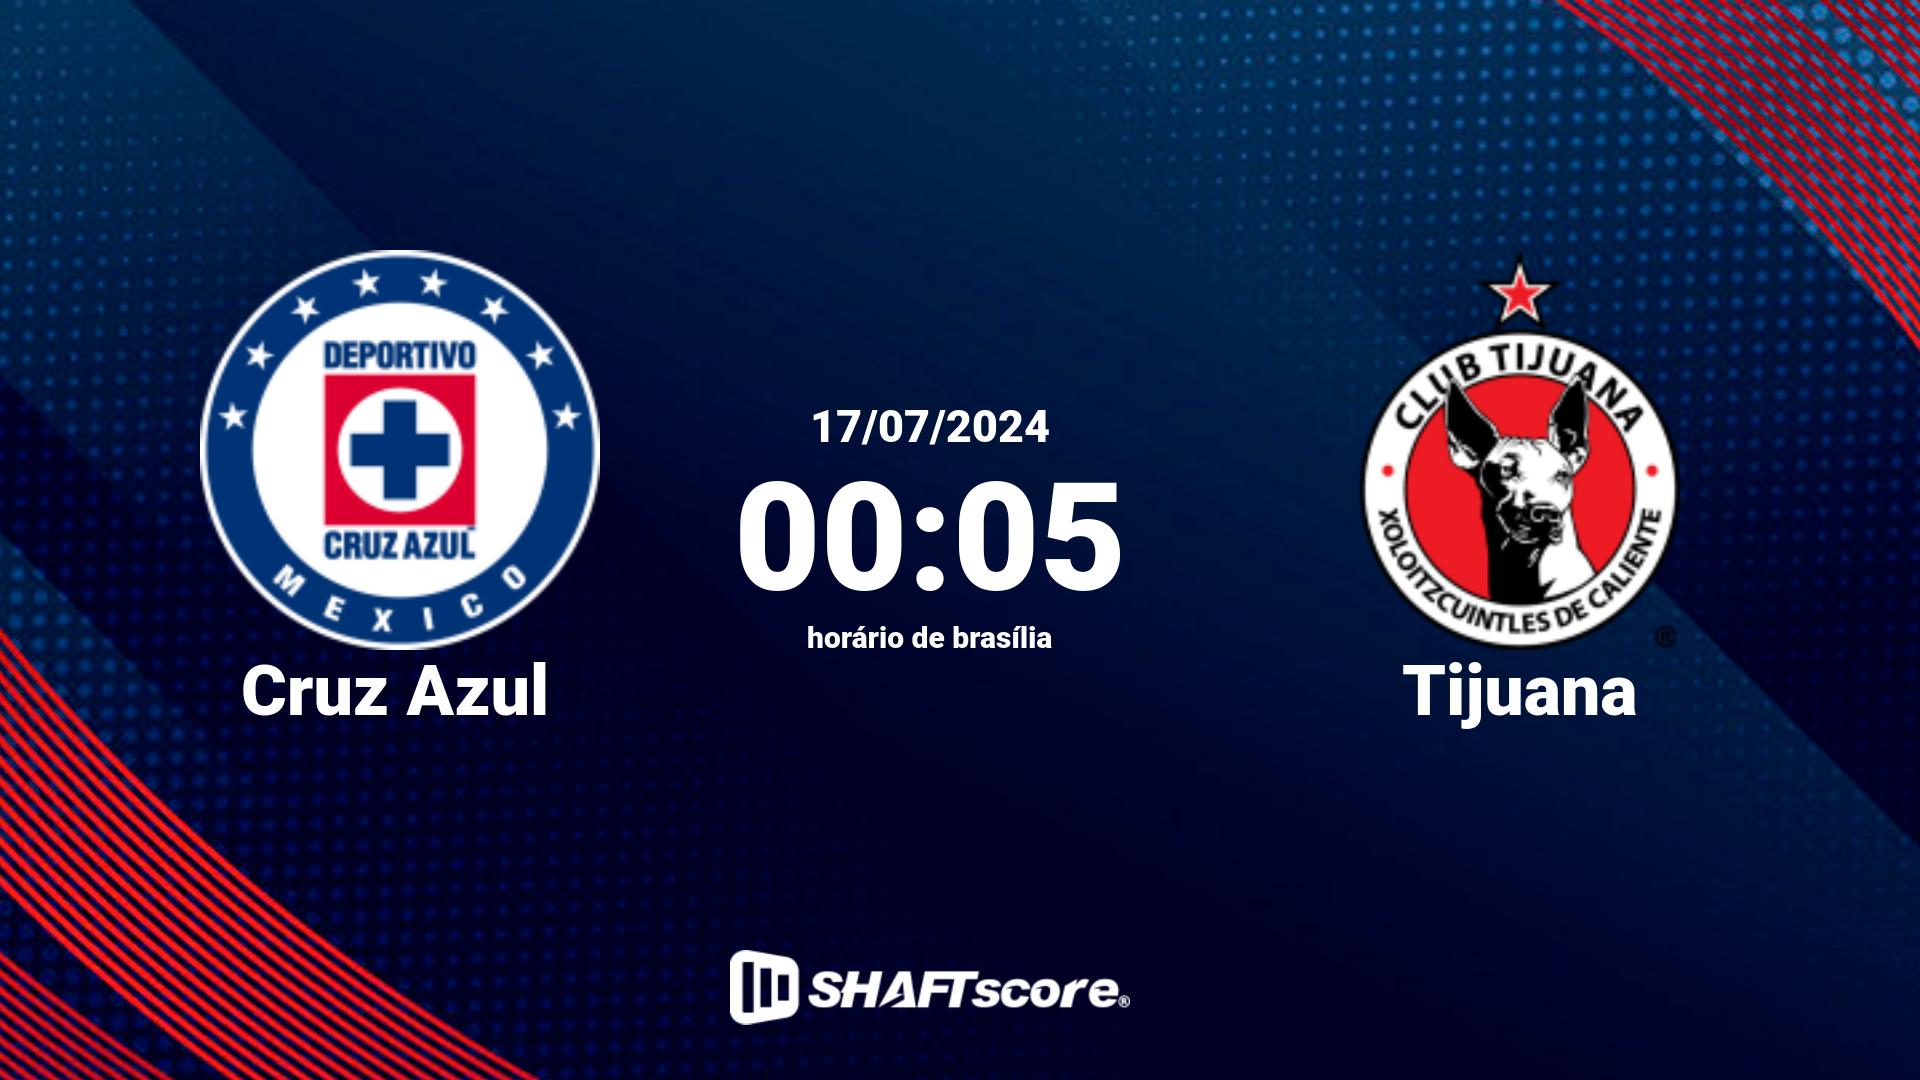 Estatísticas do jogo Cruz Azul vs Tijuana 17.07 00:05